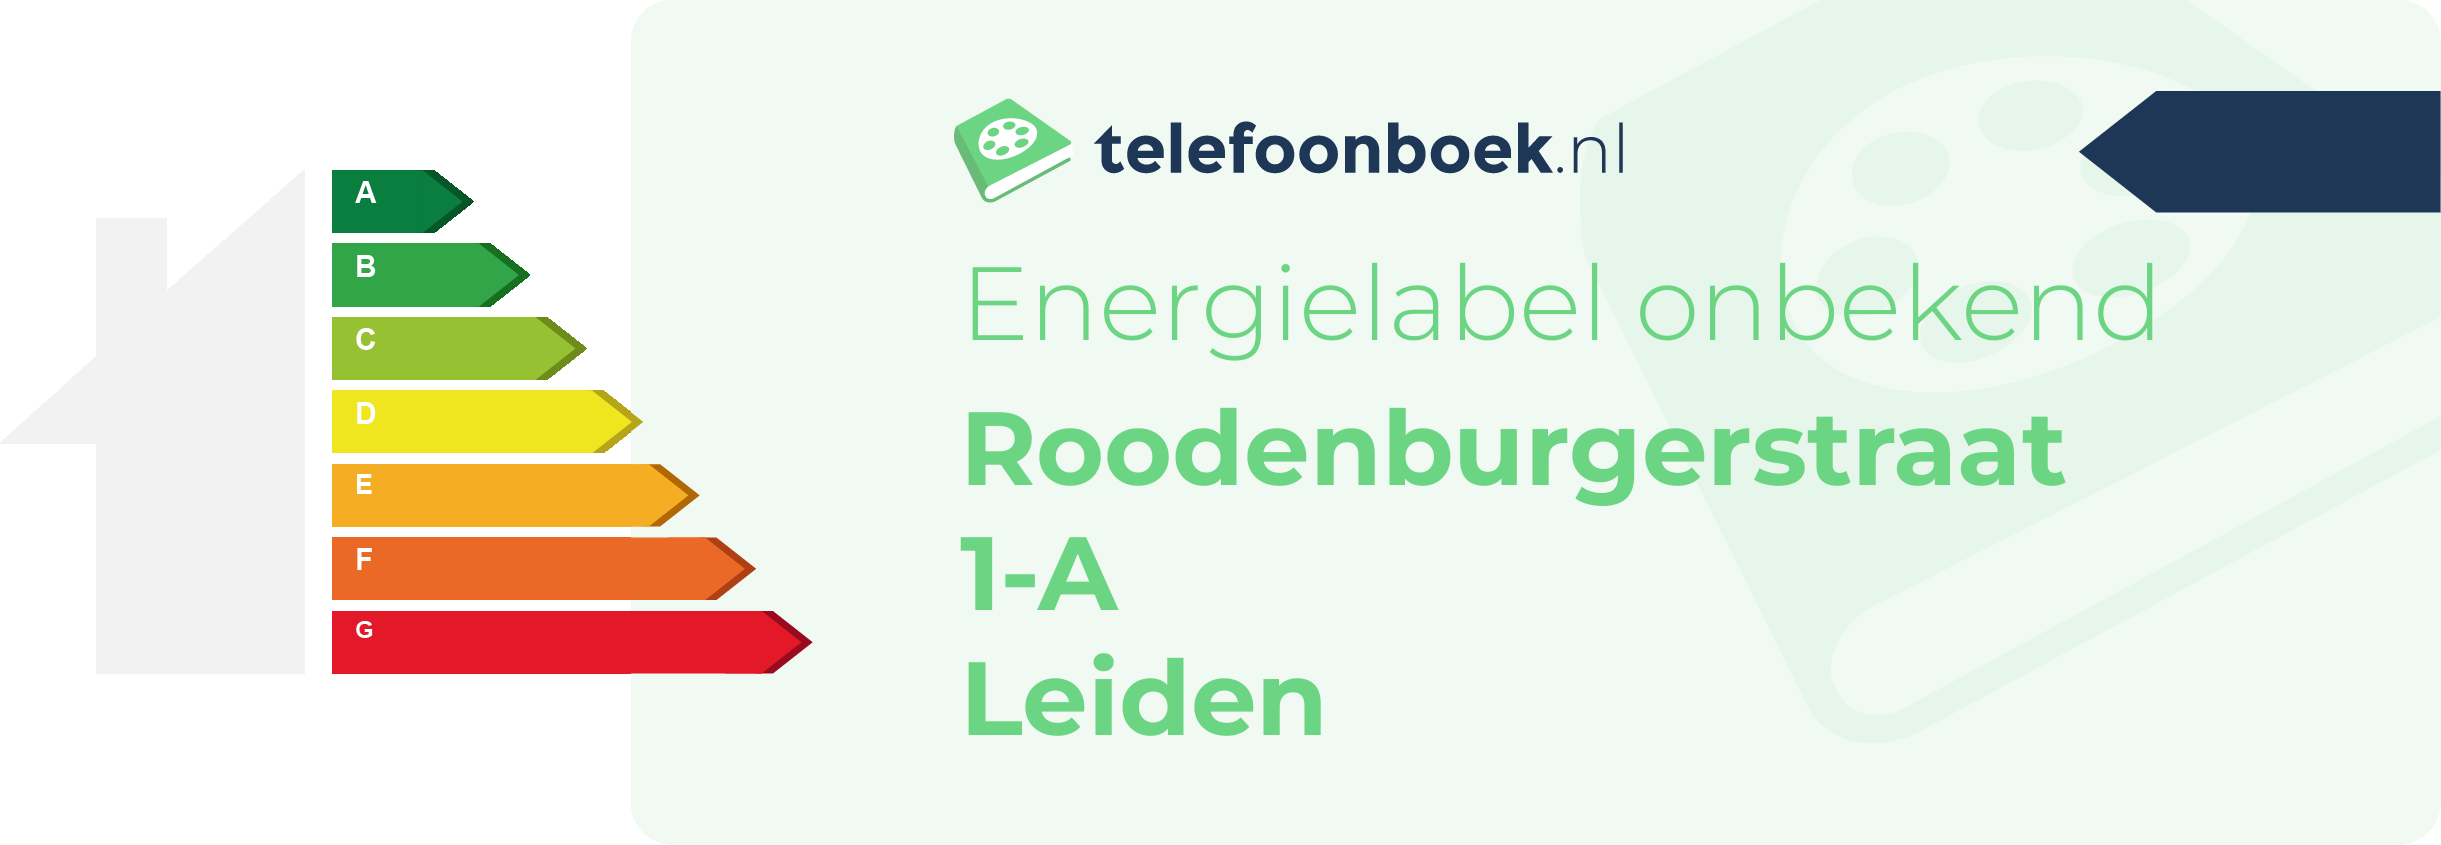 Energielabel Roodenburgerstraat 1-A Leiden